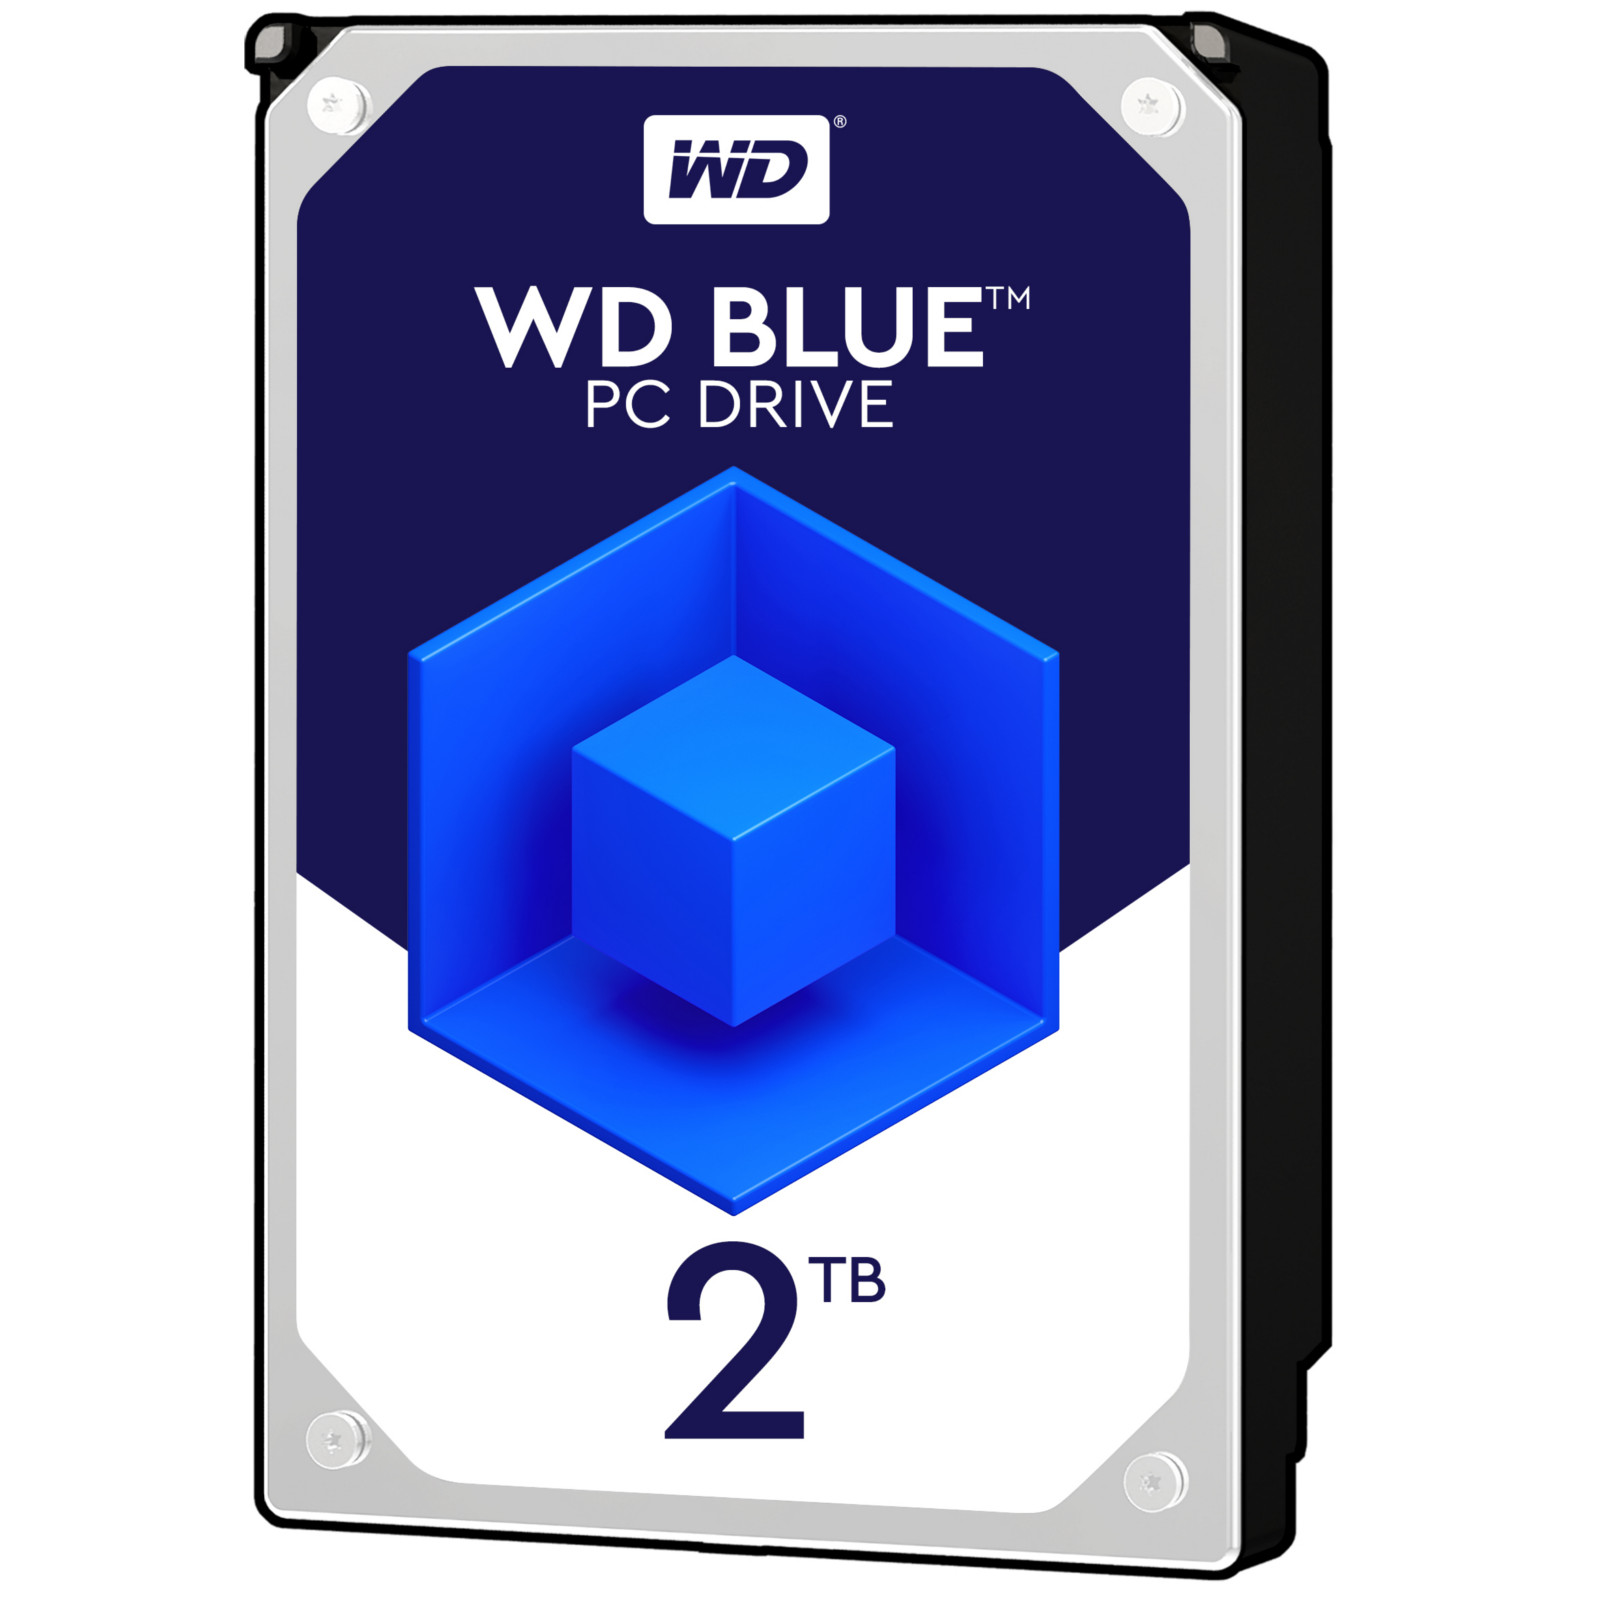 WD - WD 2TB Blue HDD 5400rpm 256MB Cache Internal Hard Drive (WD20EZAZ)